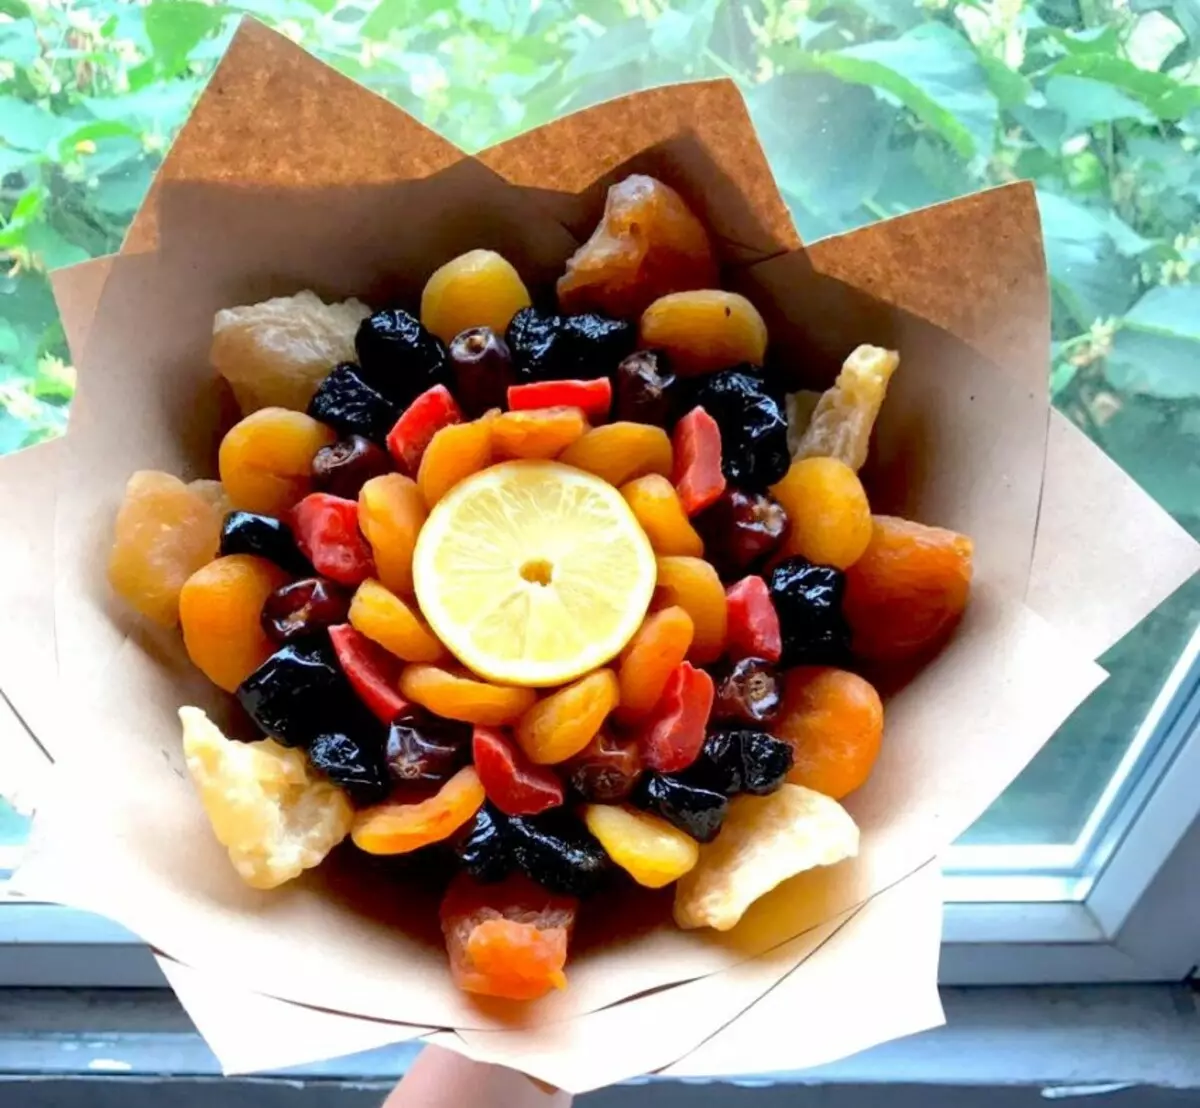 Δώρα από αποξηραμένα φρούτα και καρύδια: Πώς να πακετάρετε όμορφα ένα σύνολο αποξηραμένων φρούτων και καρυδιών; Πώς να τα βάλετε όμορφα σε ένα πιάτο; 7682_12